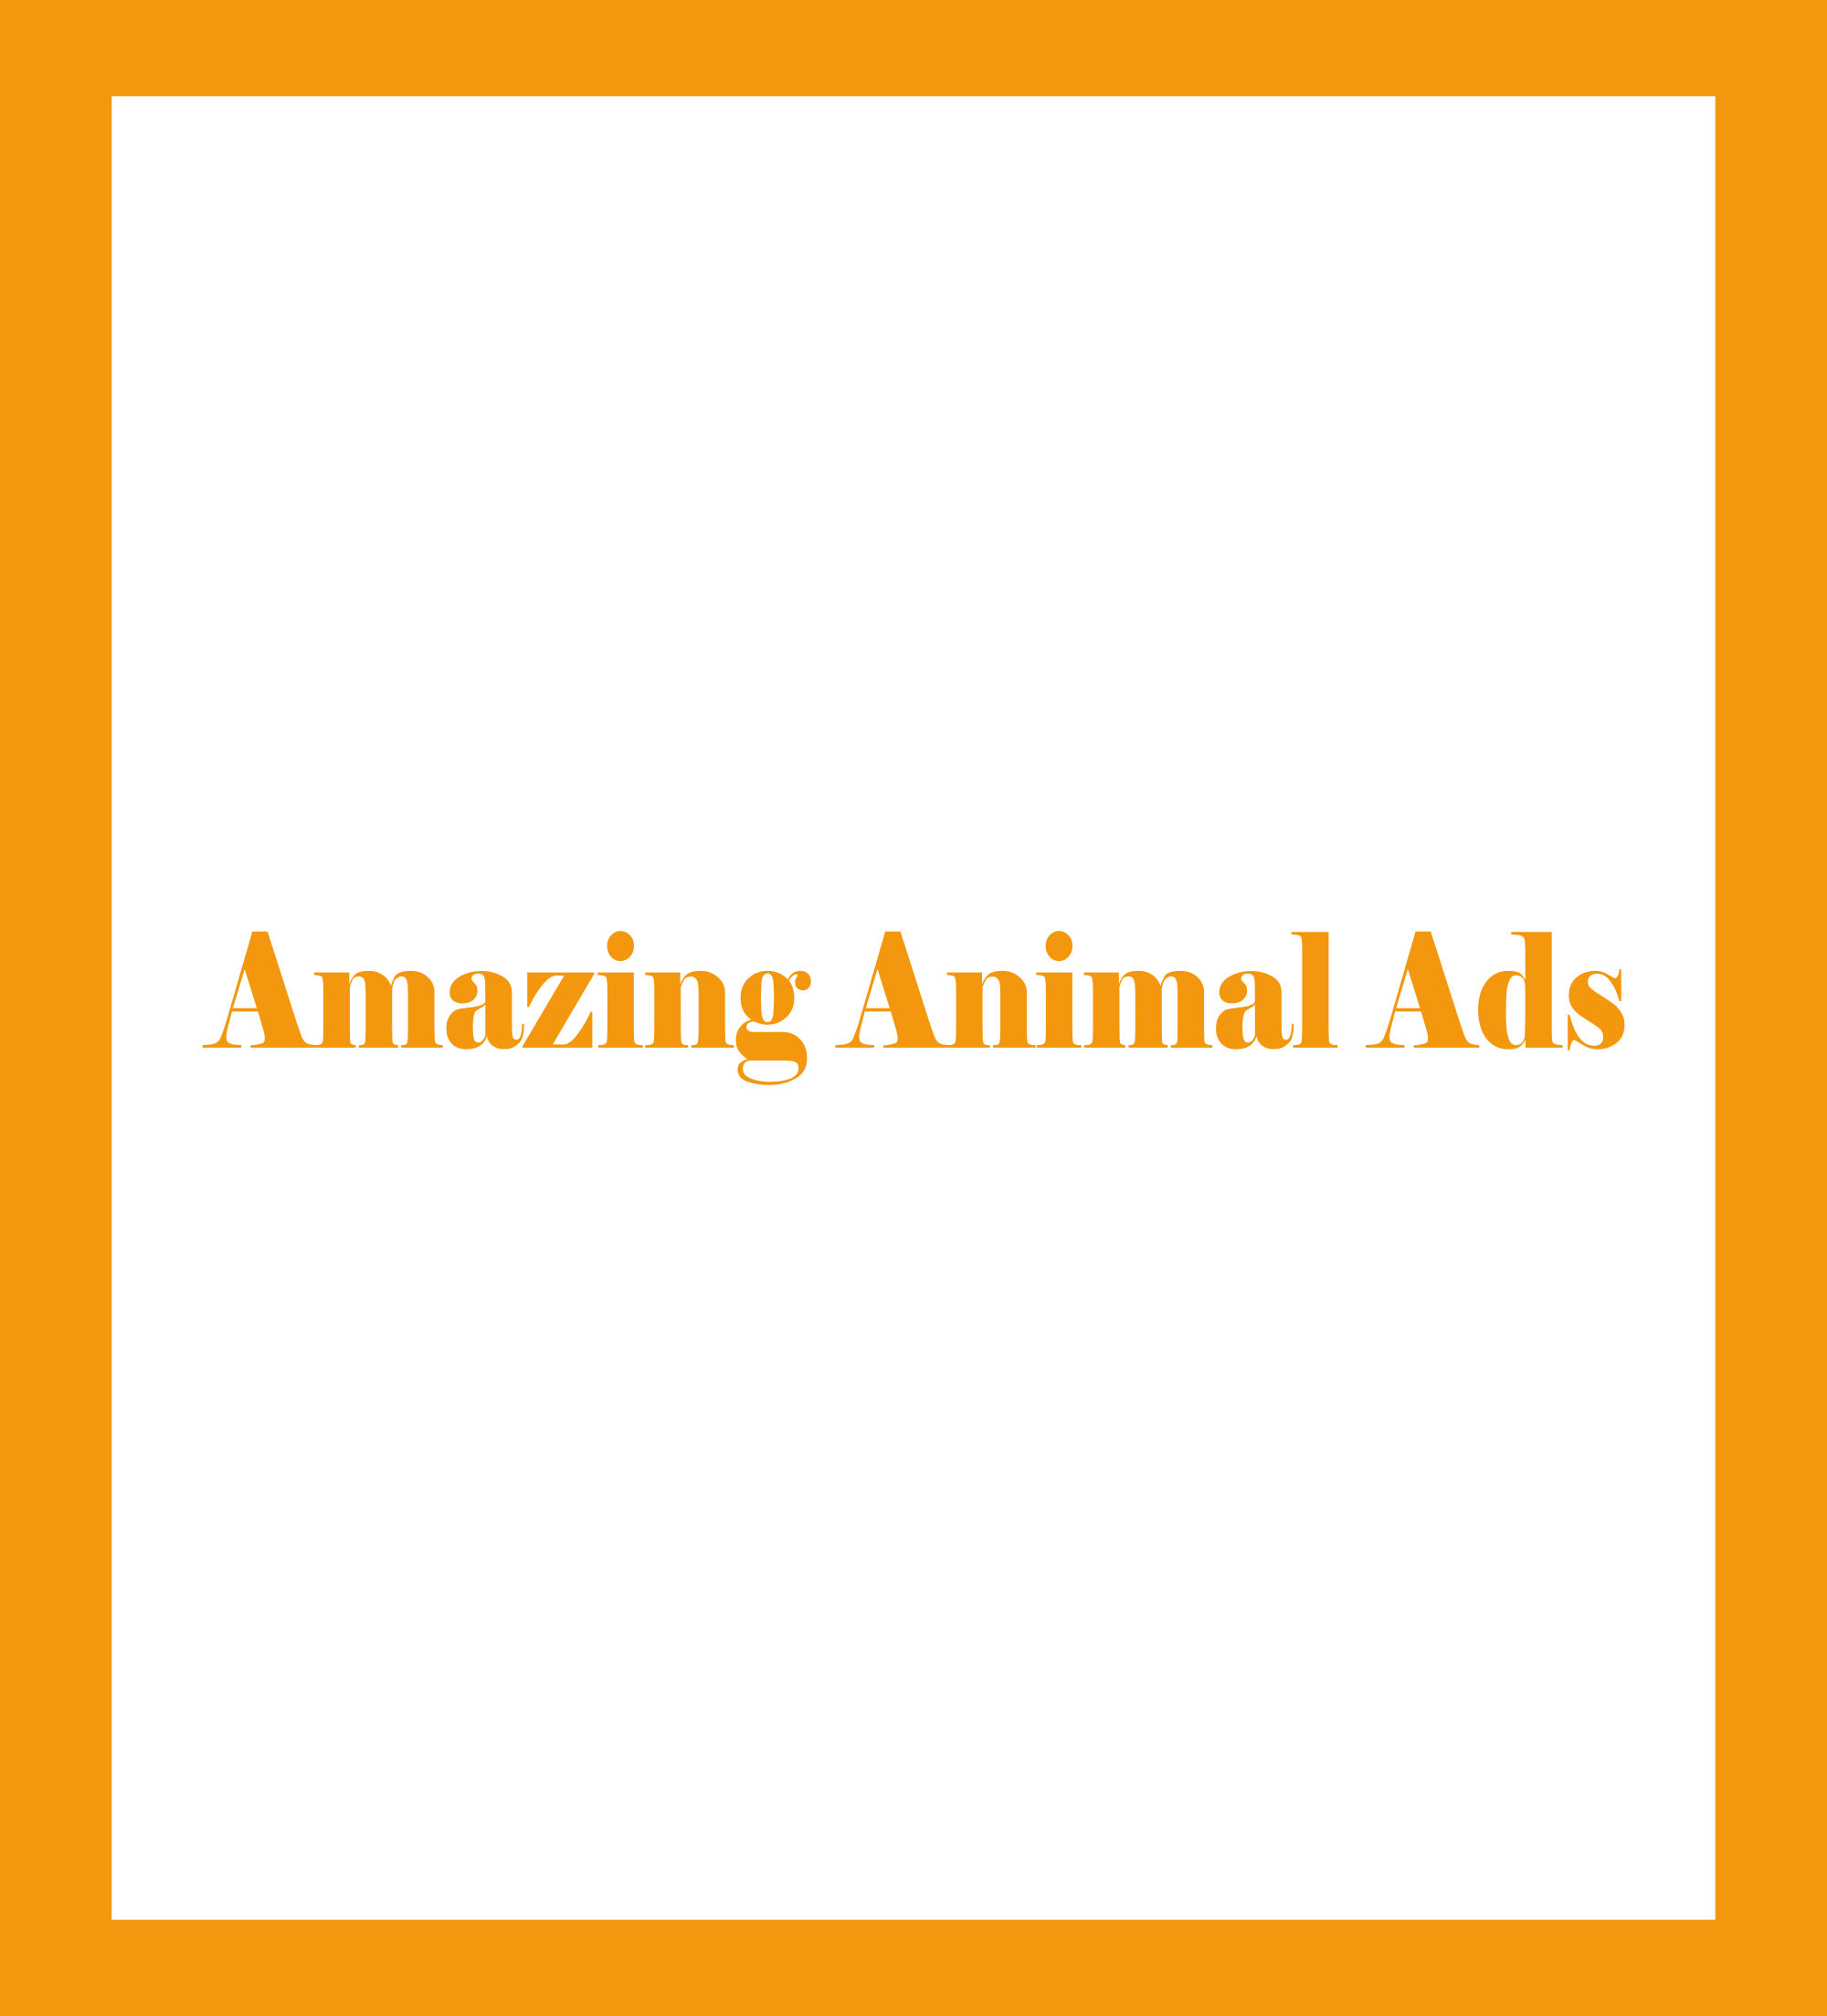 Amazing Animal Ads